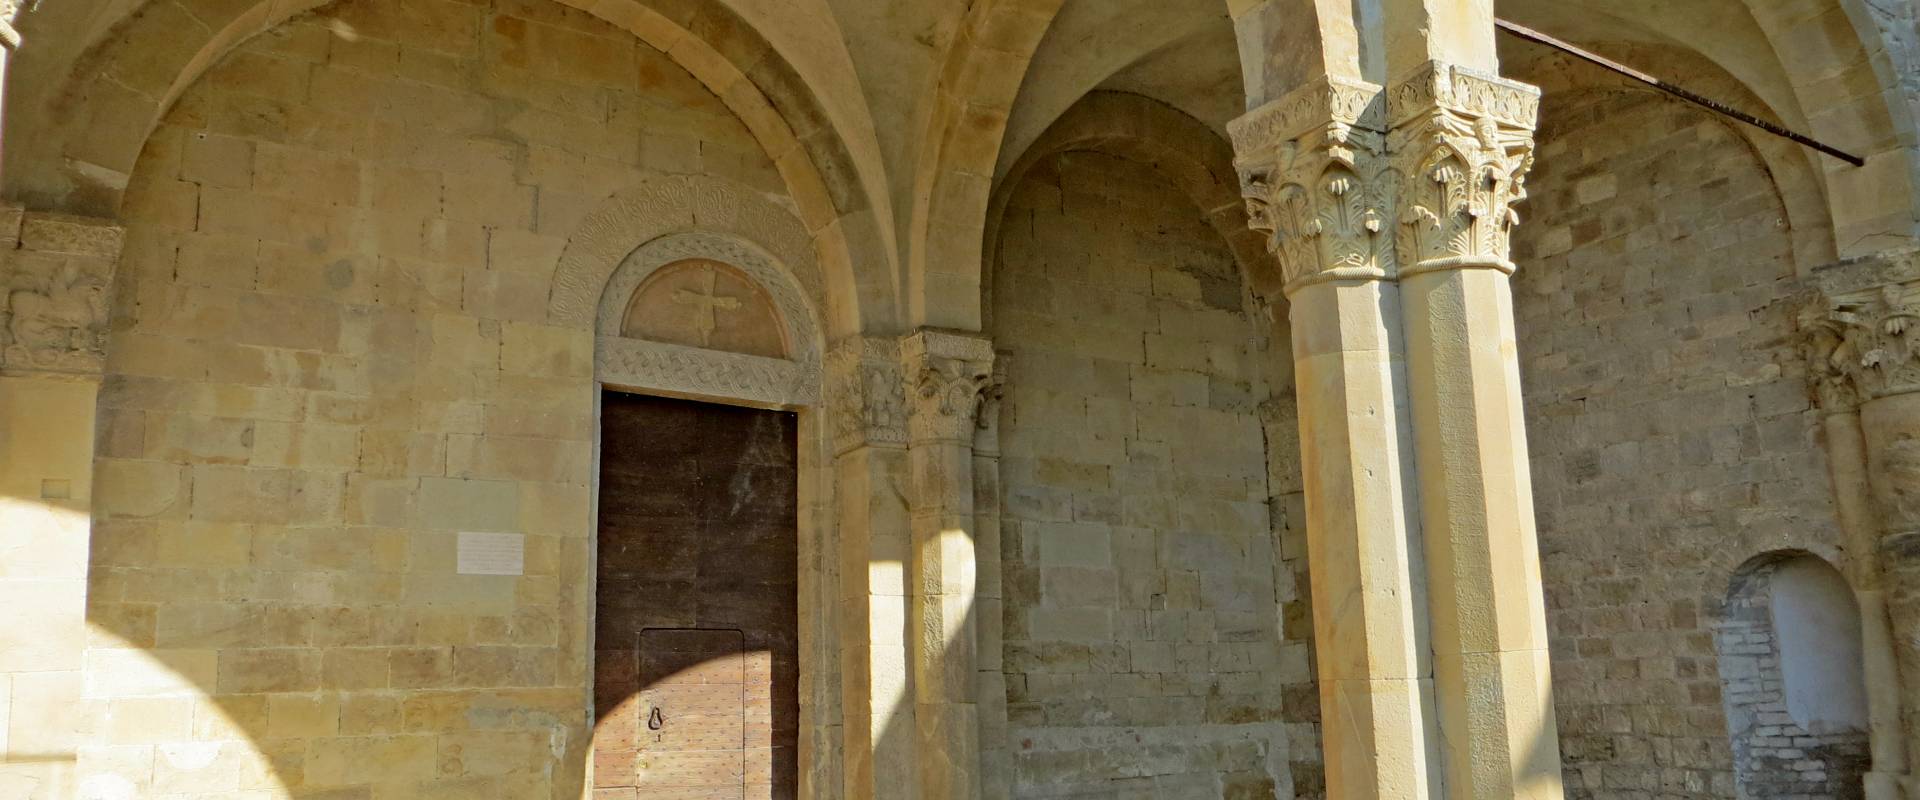 Abbazia di San Basilide (San Michele Cavana, Lesignano de' Bagni) - nartece della chiesa dei Santi Pietro e Paolo 2019-06-26 foto di Parma198